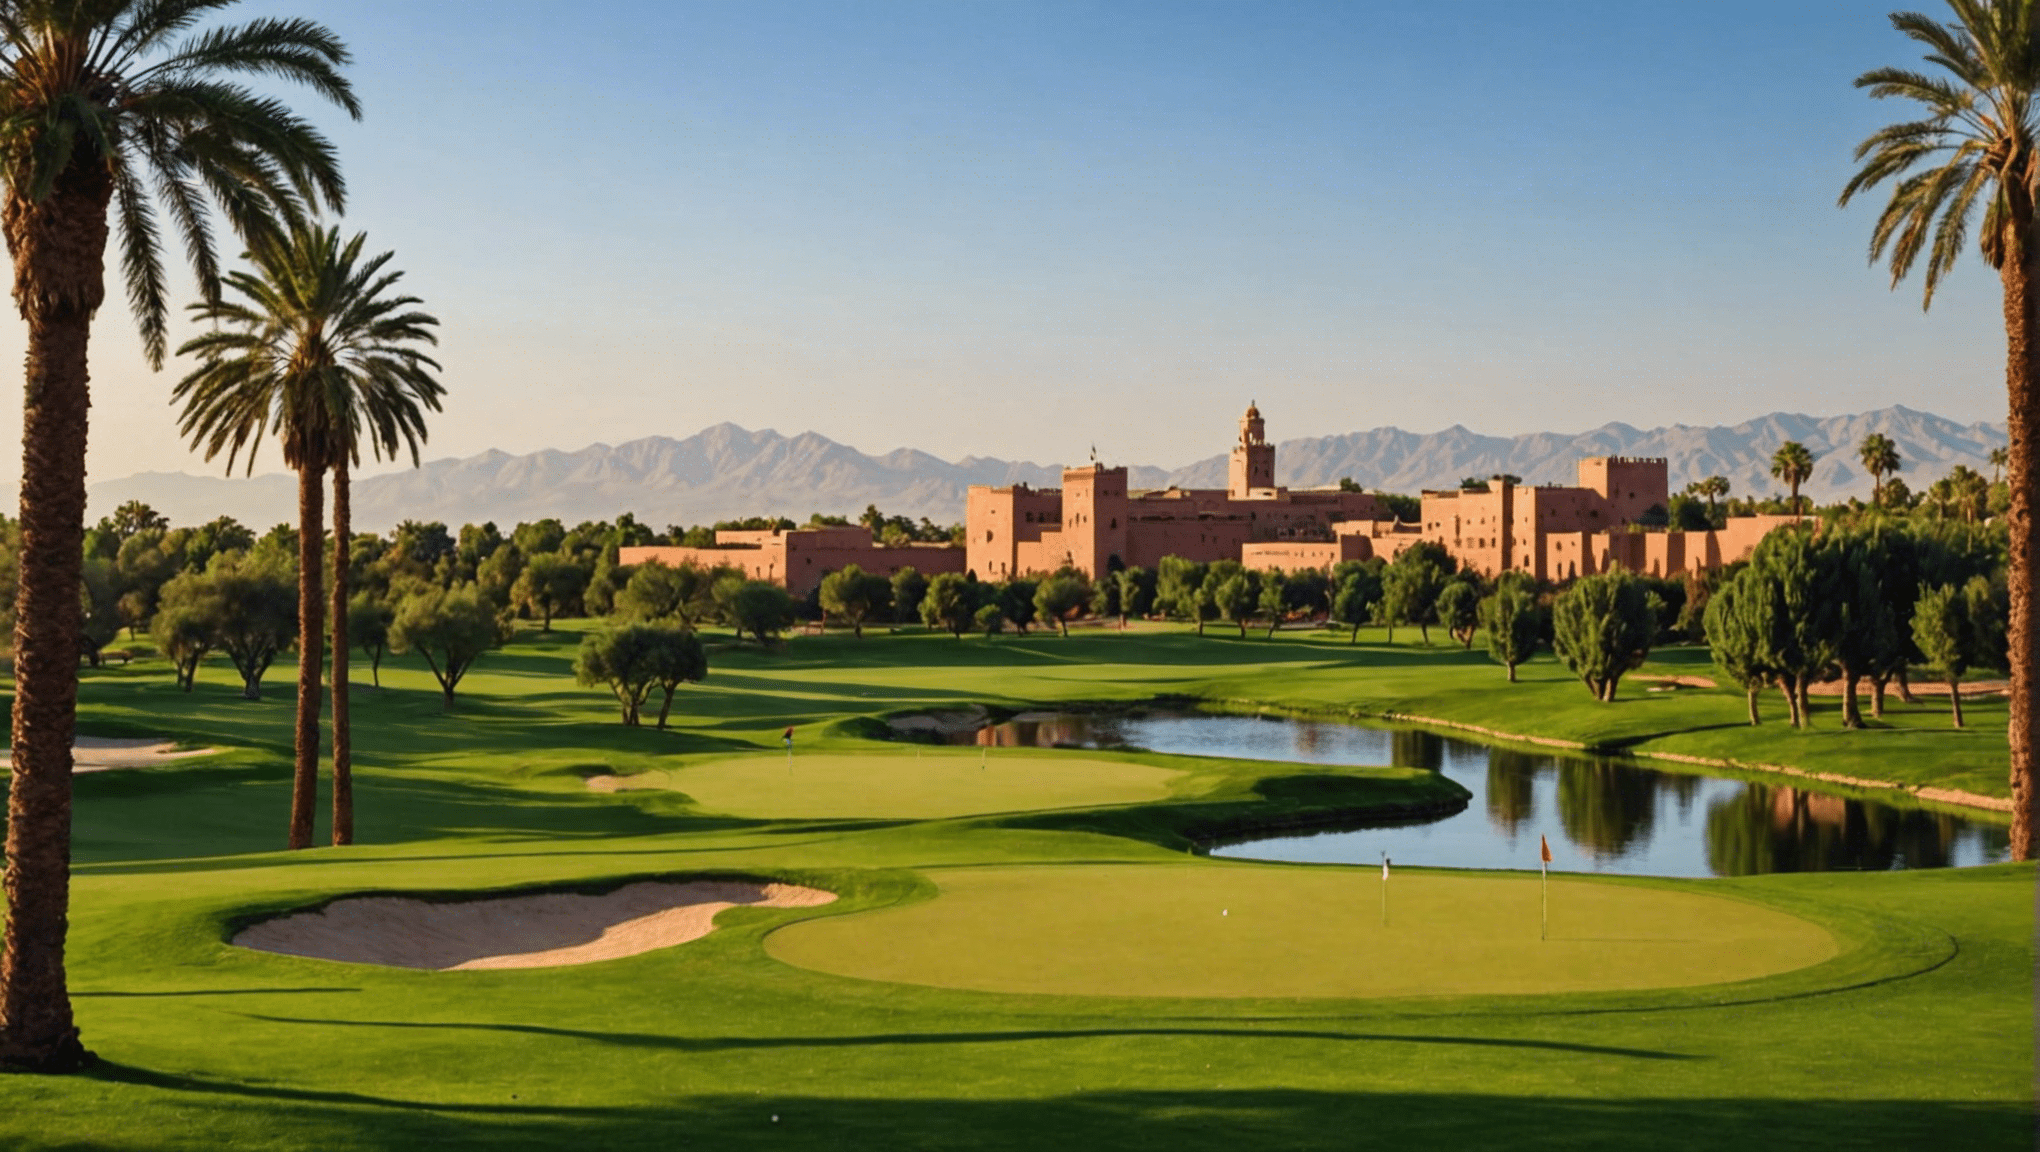 Descubra los numerosos y lujosos campos de golf de Marrakech, un paraíso para los golfistas. Explore las impresionantes opciones de golf en esta lujosa ciudad.